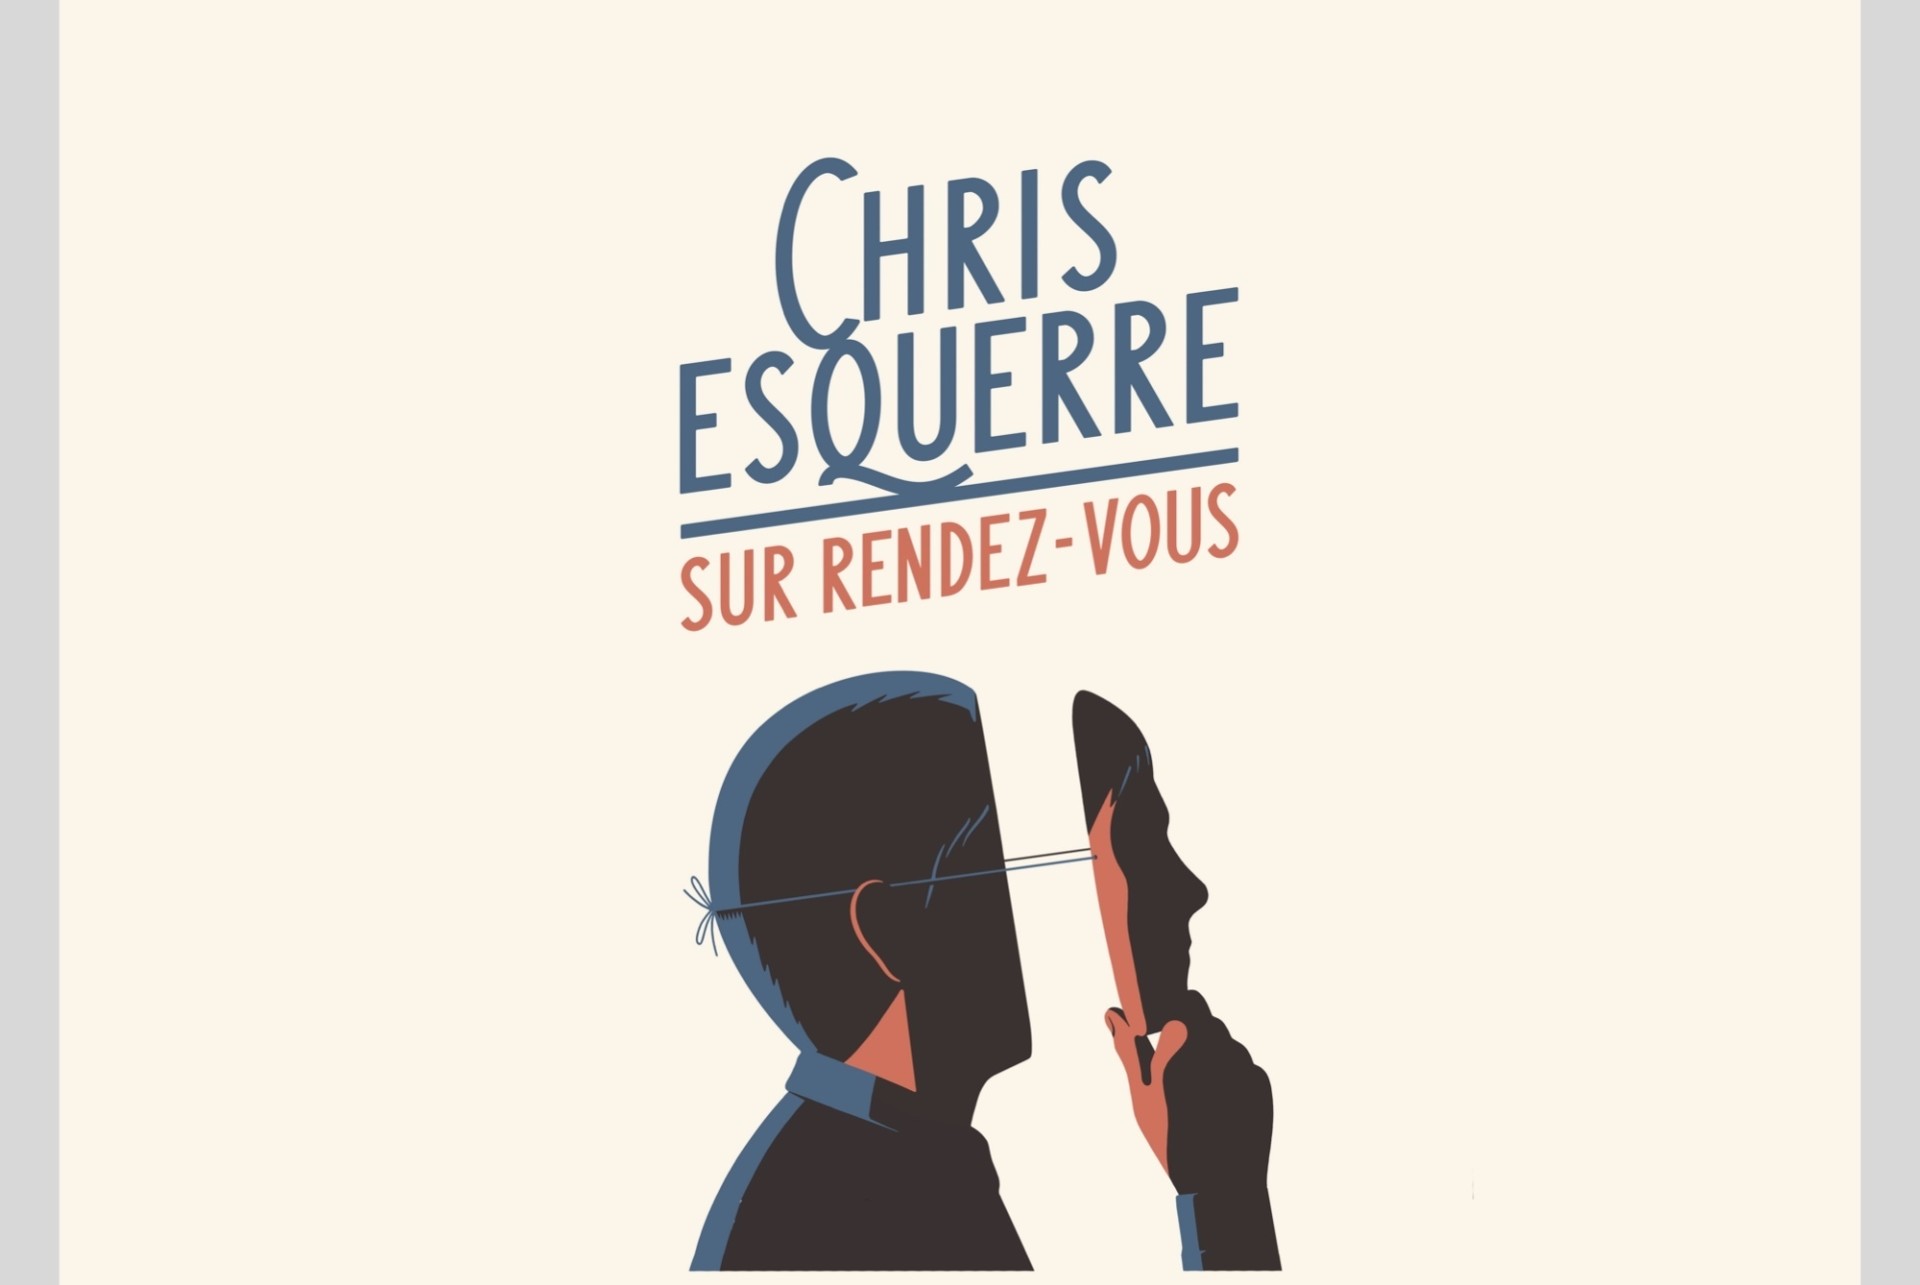 Chris Esquerre Festival d'humour du Ventoux juin 15 2019 à 21:30